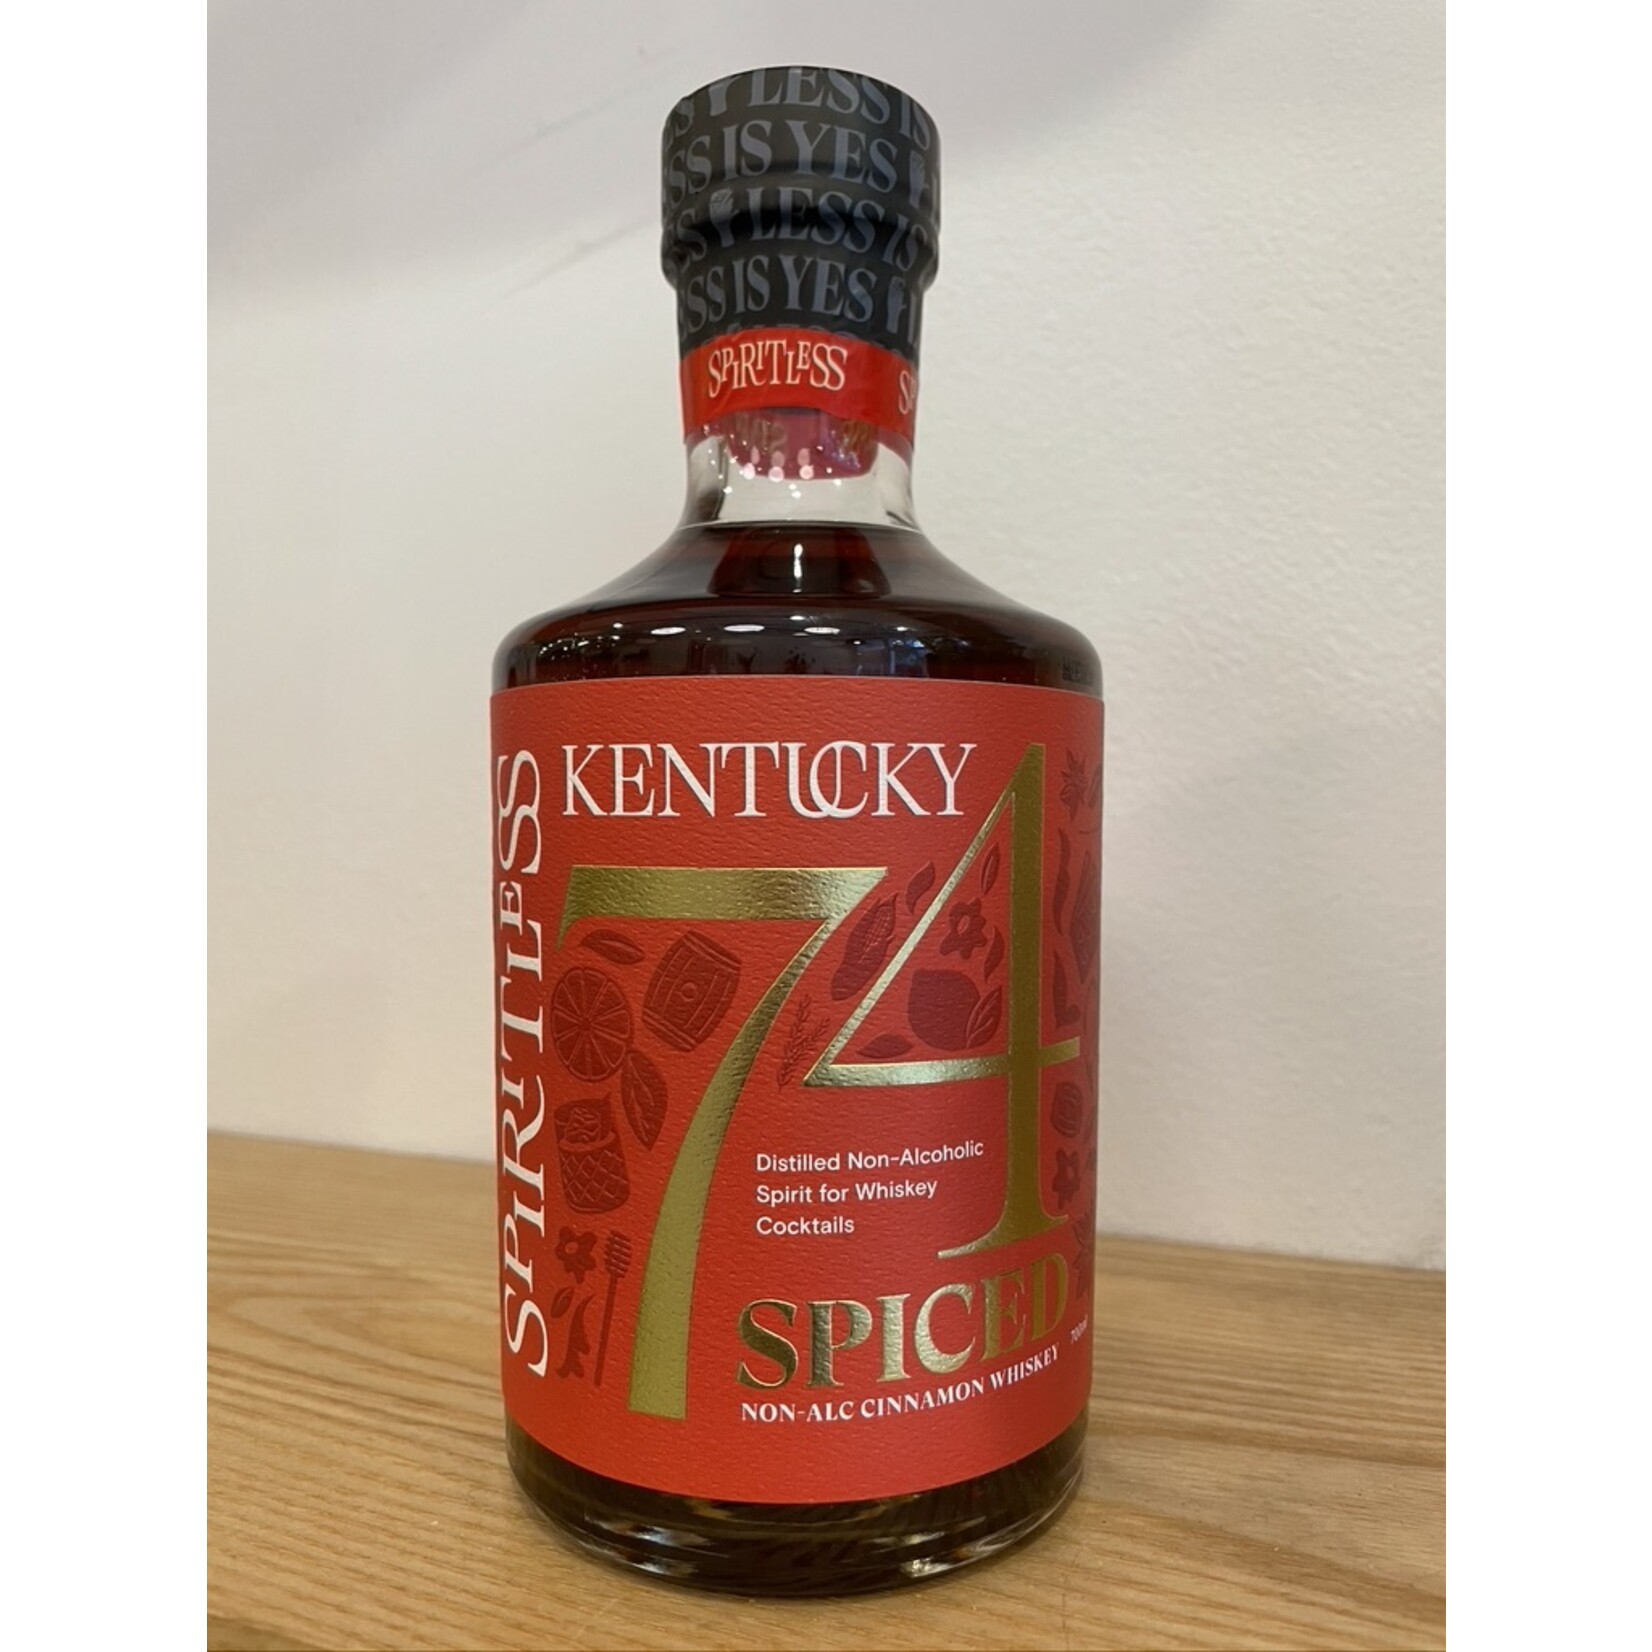 Spiritless Spiritless Kentucky 74 Spiced Bourbon